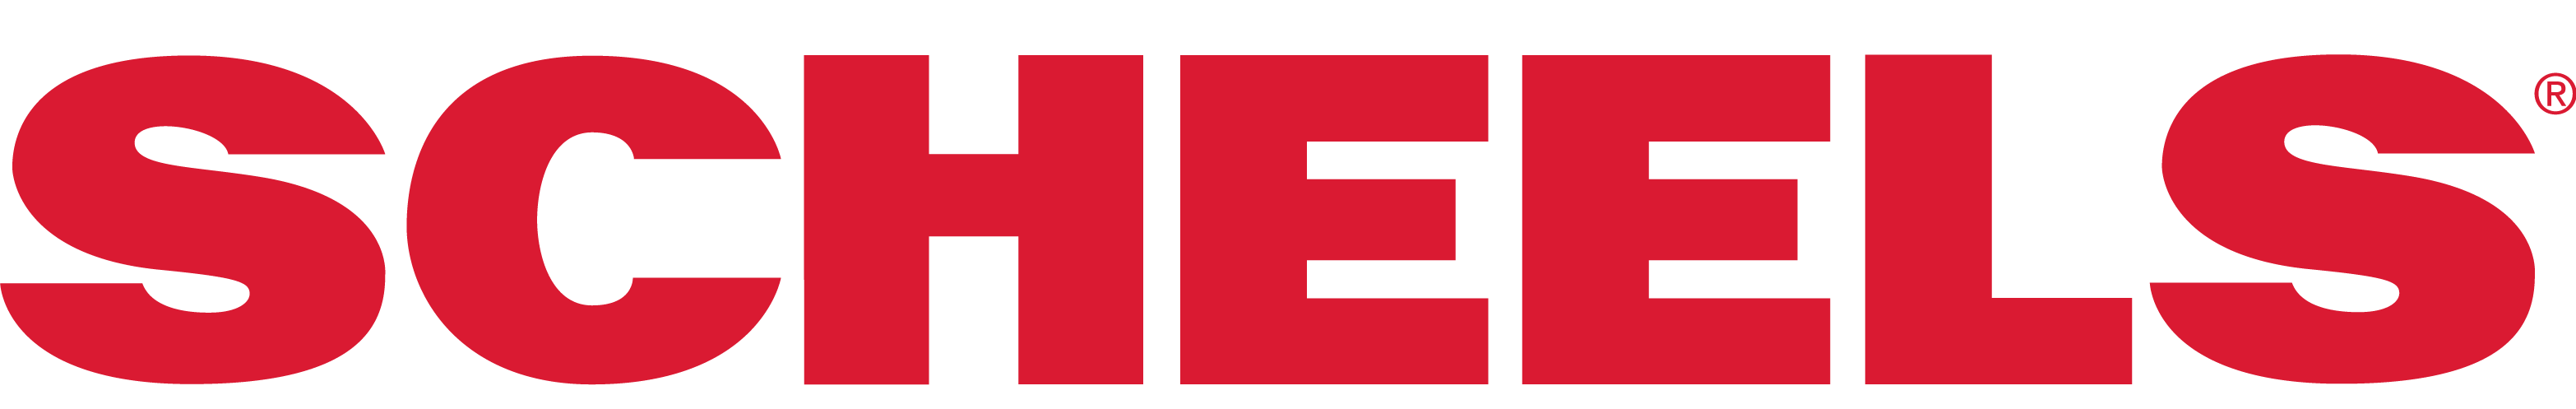 SCHEELS logo red